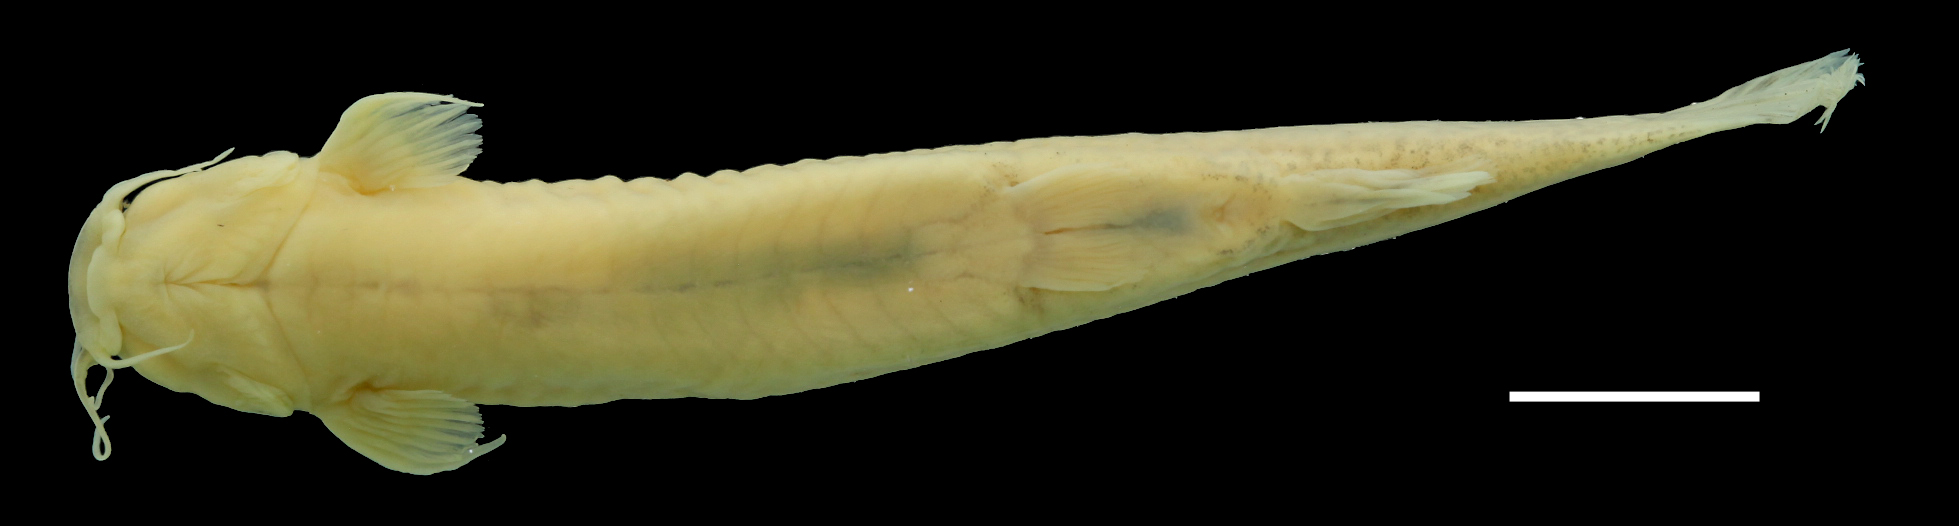 Paratype of <em>Trichomycterus ruitoquensis</em>, IAvH-P-4342_Ventral, 63.8 mm SL (scale bar = 1 cm). Photograph by C. DoNascimiento